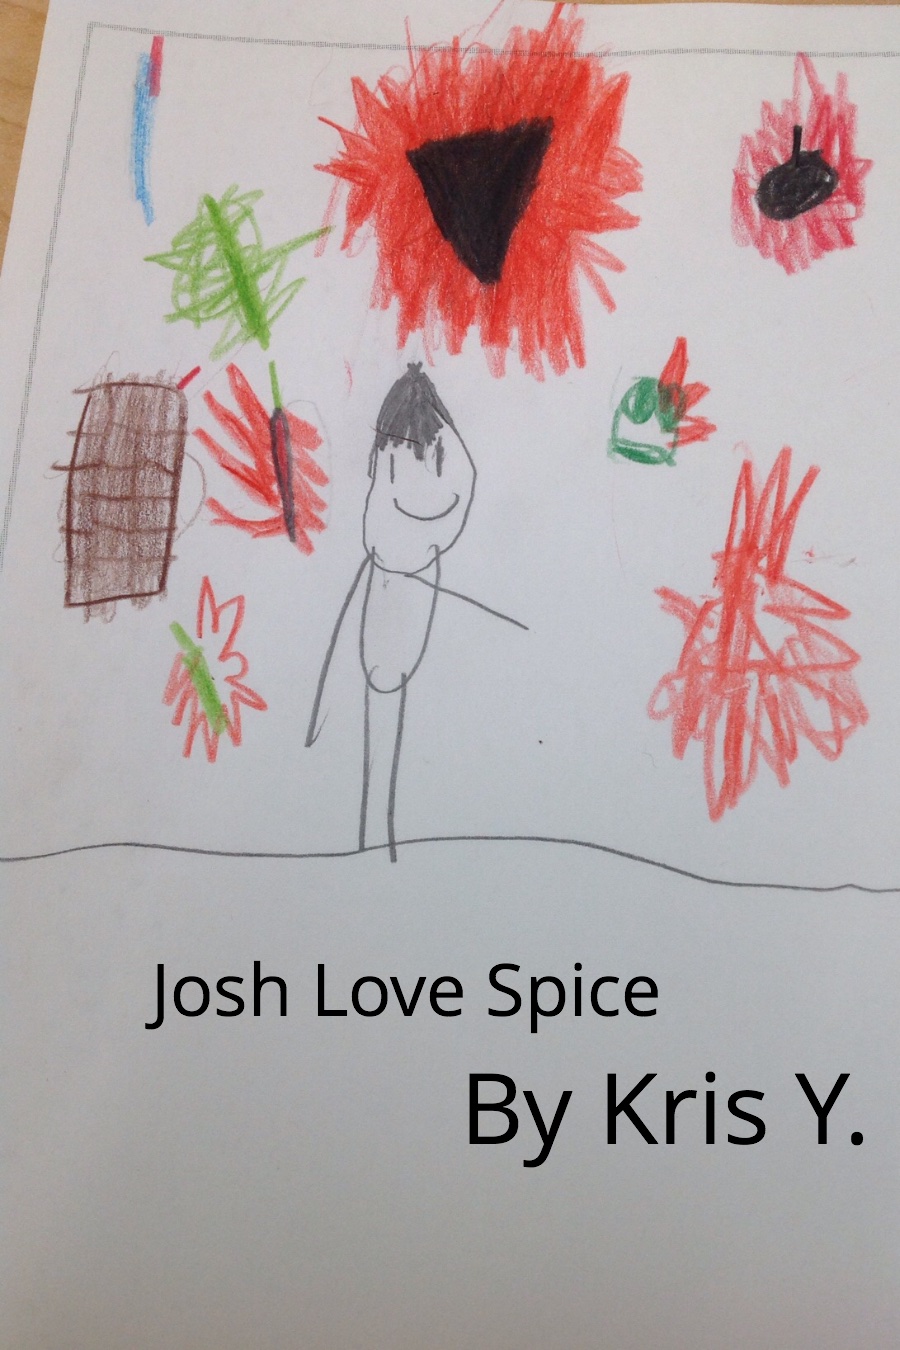 Josh Loves Spice by Kris Y